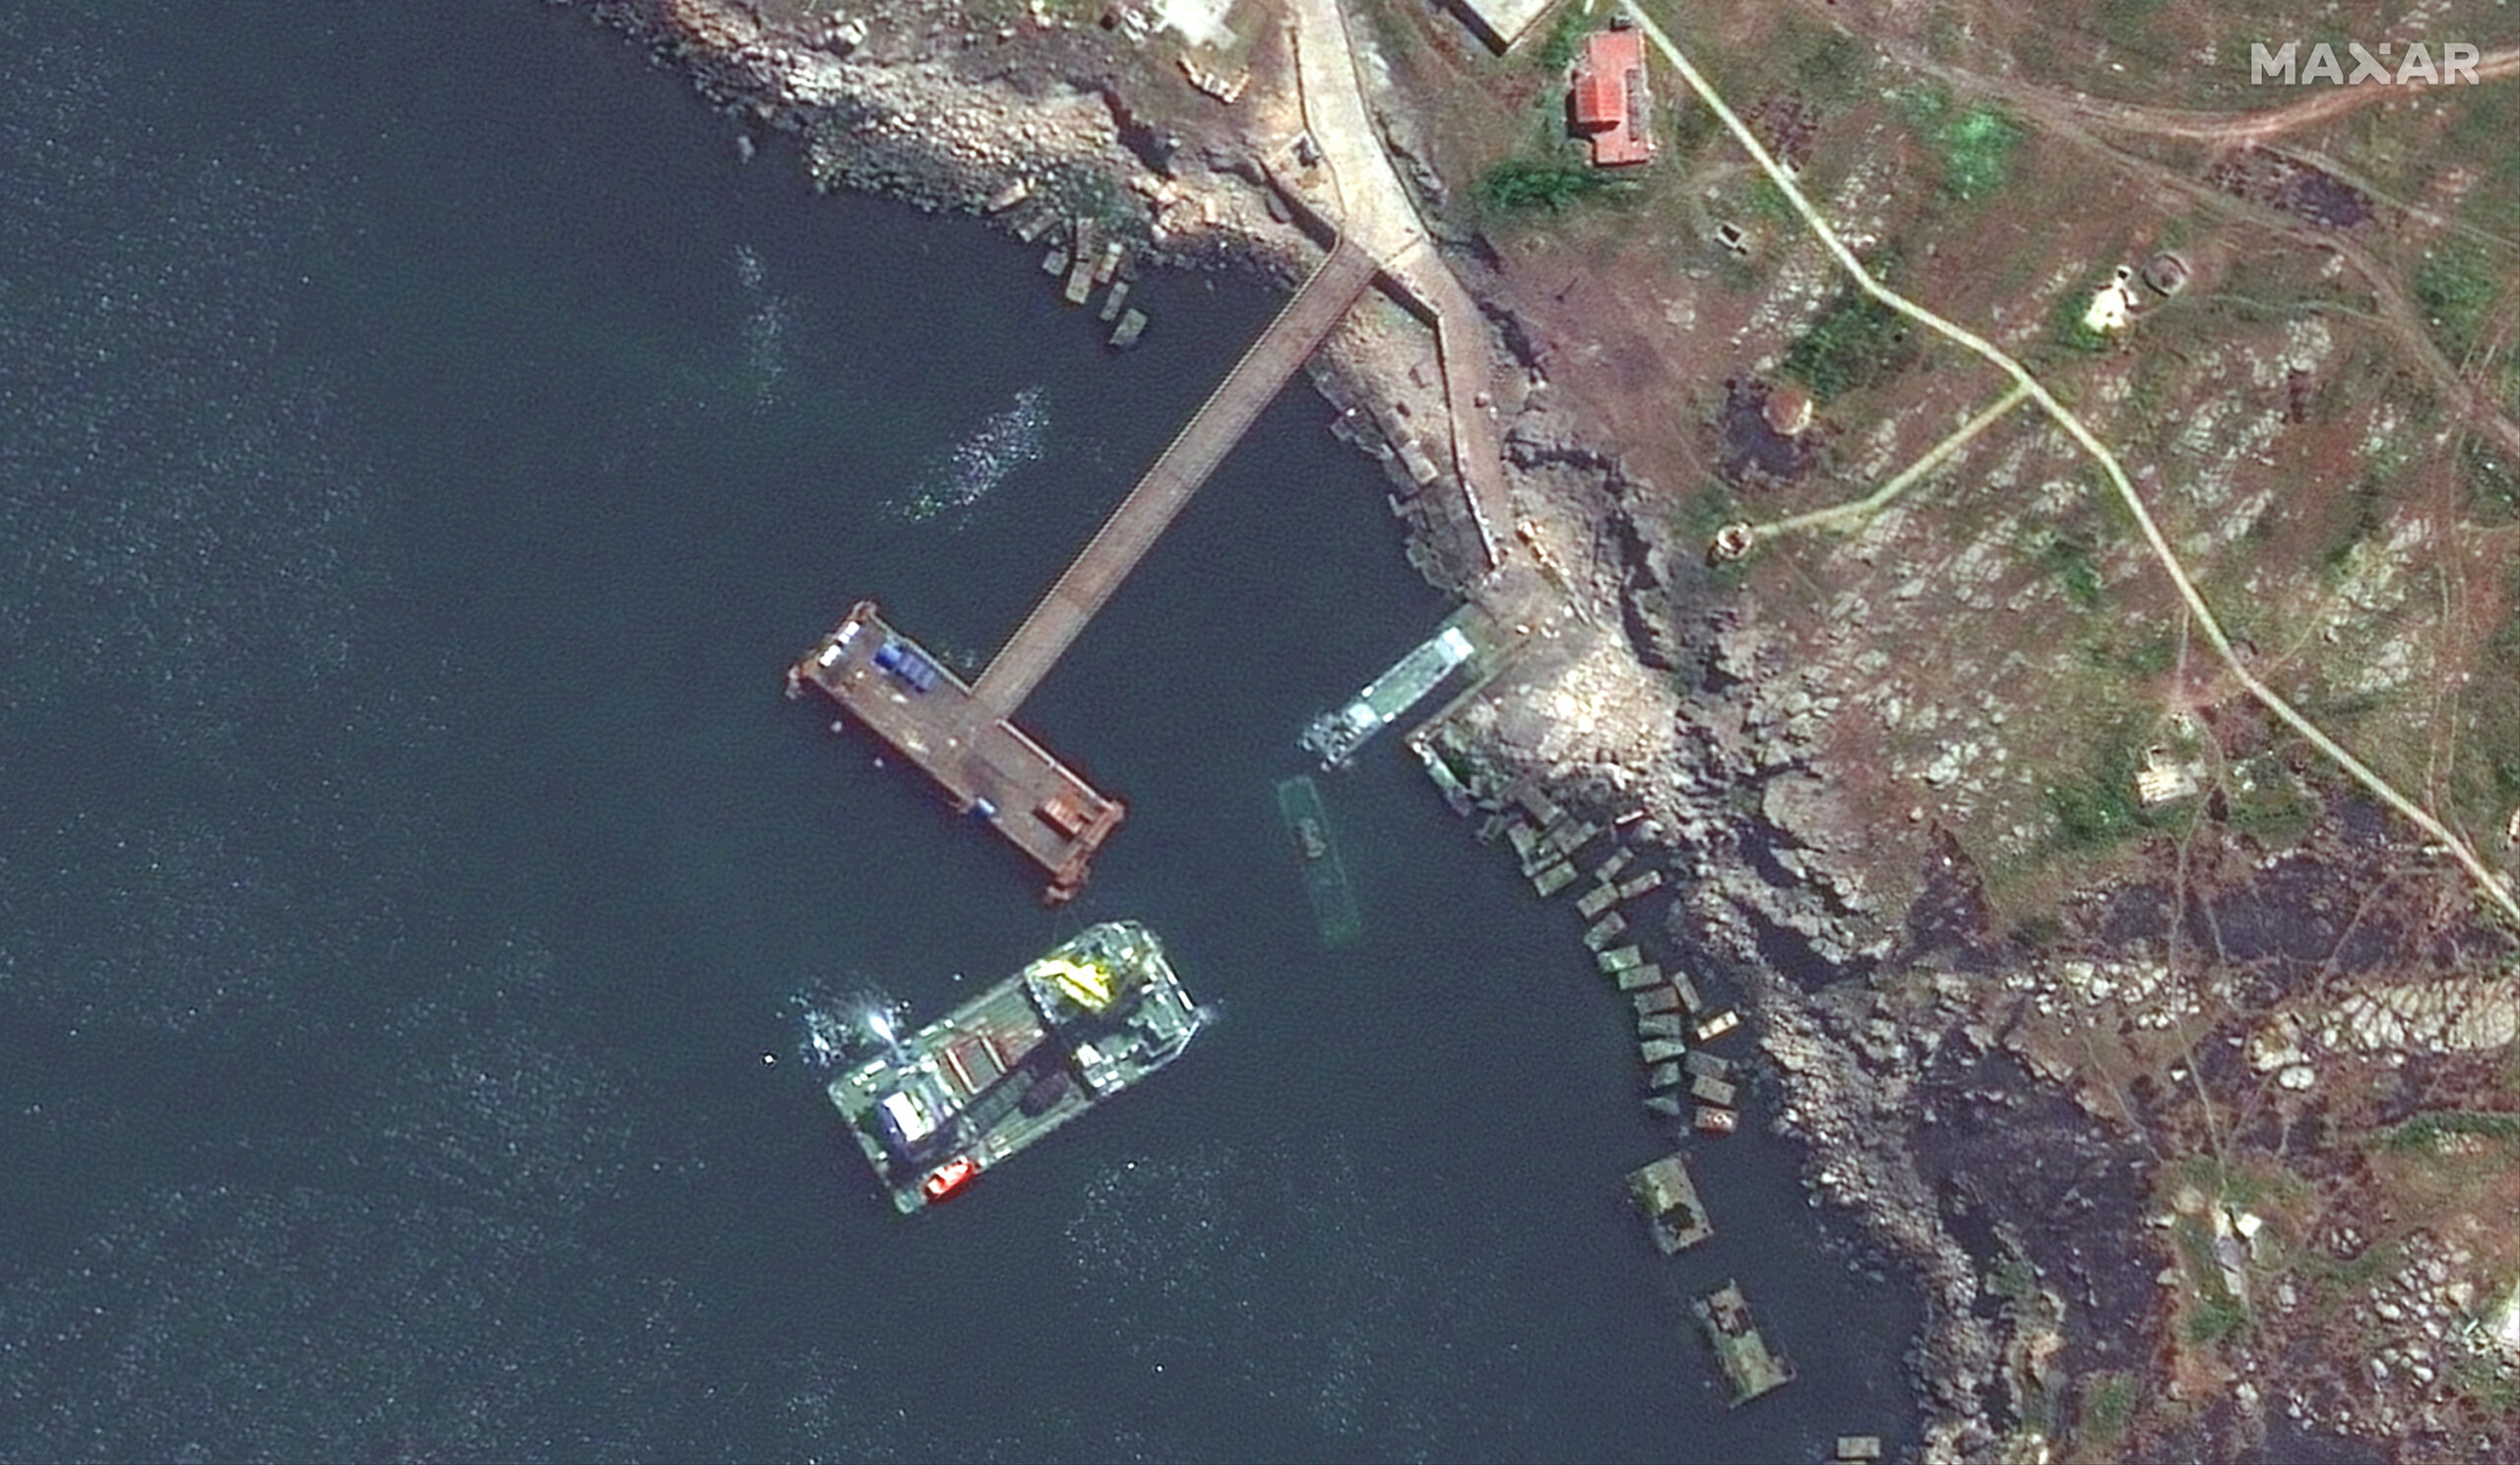 Появились новые спутниковые снимки разрушений с острова Змеиный от Maxar - 1 - изображение